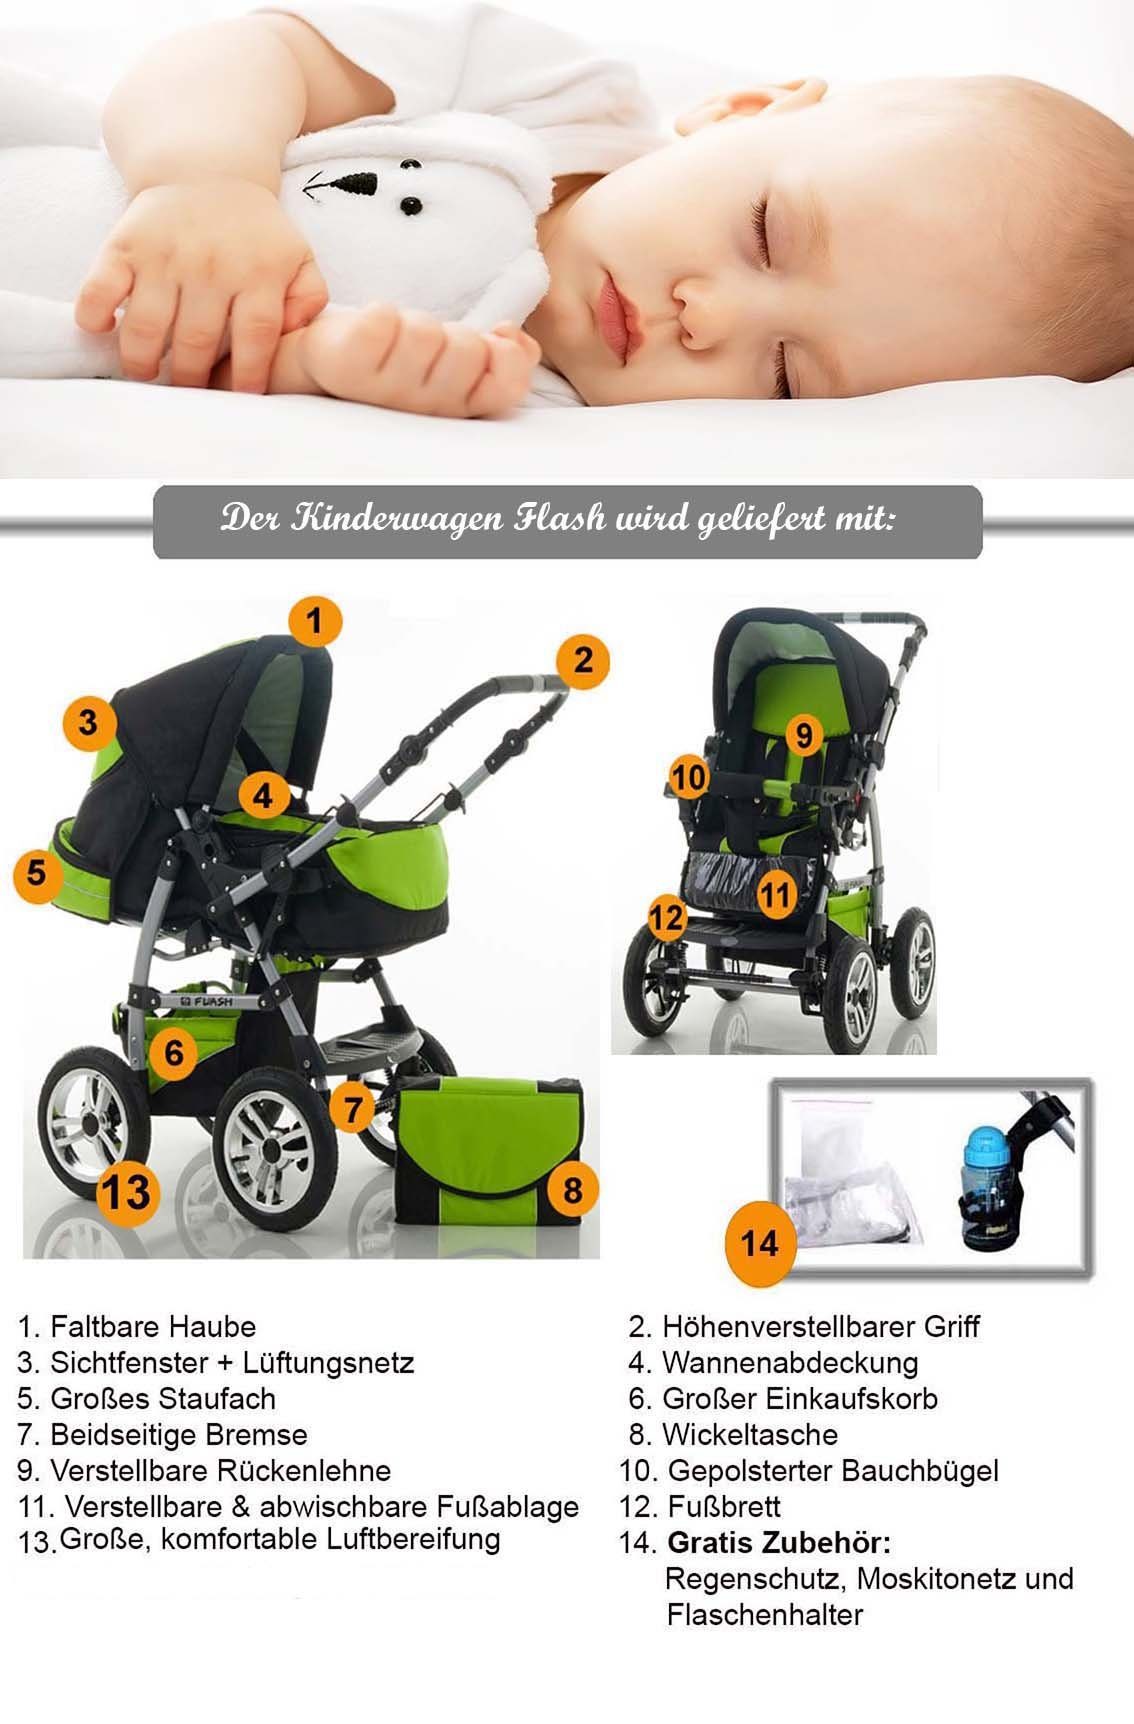 babies-on-wheels Kombi-Kinderwagen 2 in 1 Teile Flash in 14 - Farben Kinderwagen-Set 18 - Anthrazit-Grün